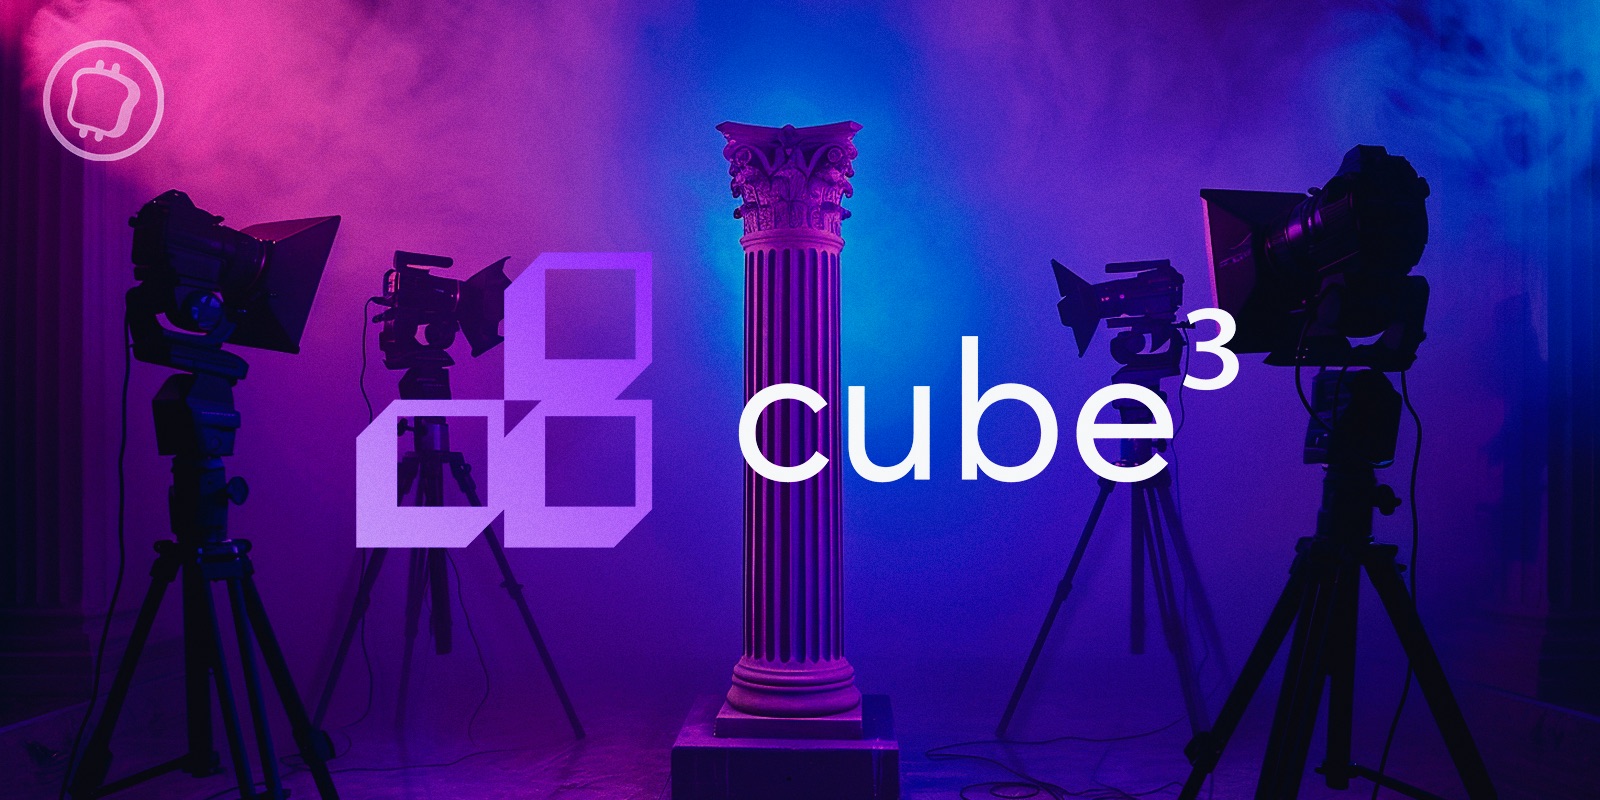 Cube3 : Retour sur la sélection des projets Web3 les plus prometteurs (1re partie)